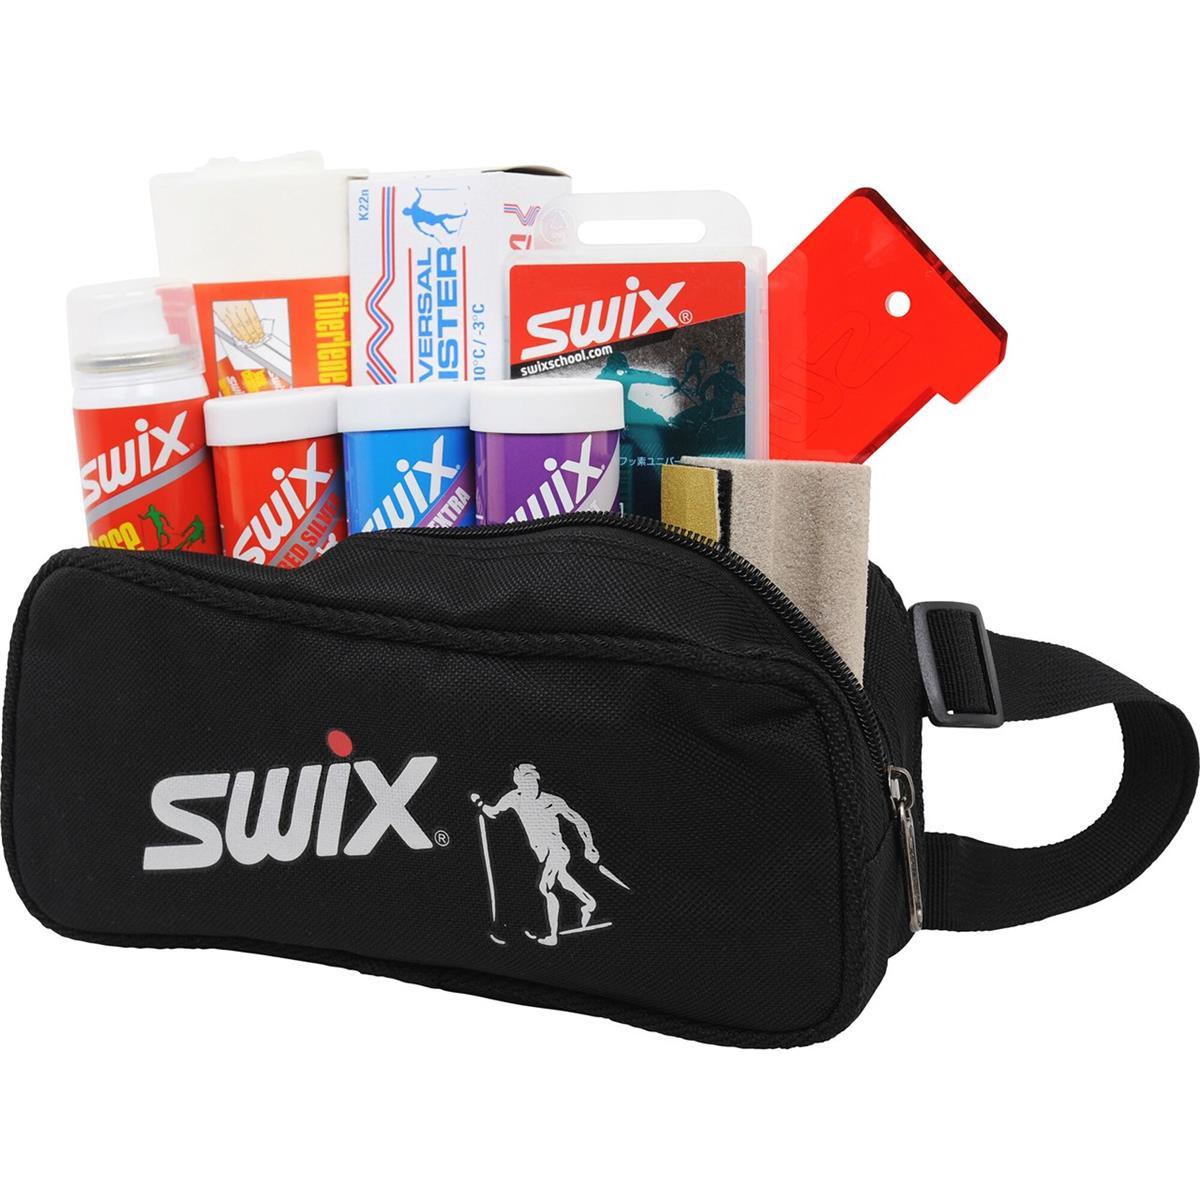 Swix P35 XC Wax kit cont.9pcs.